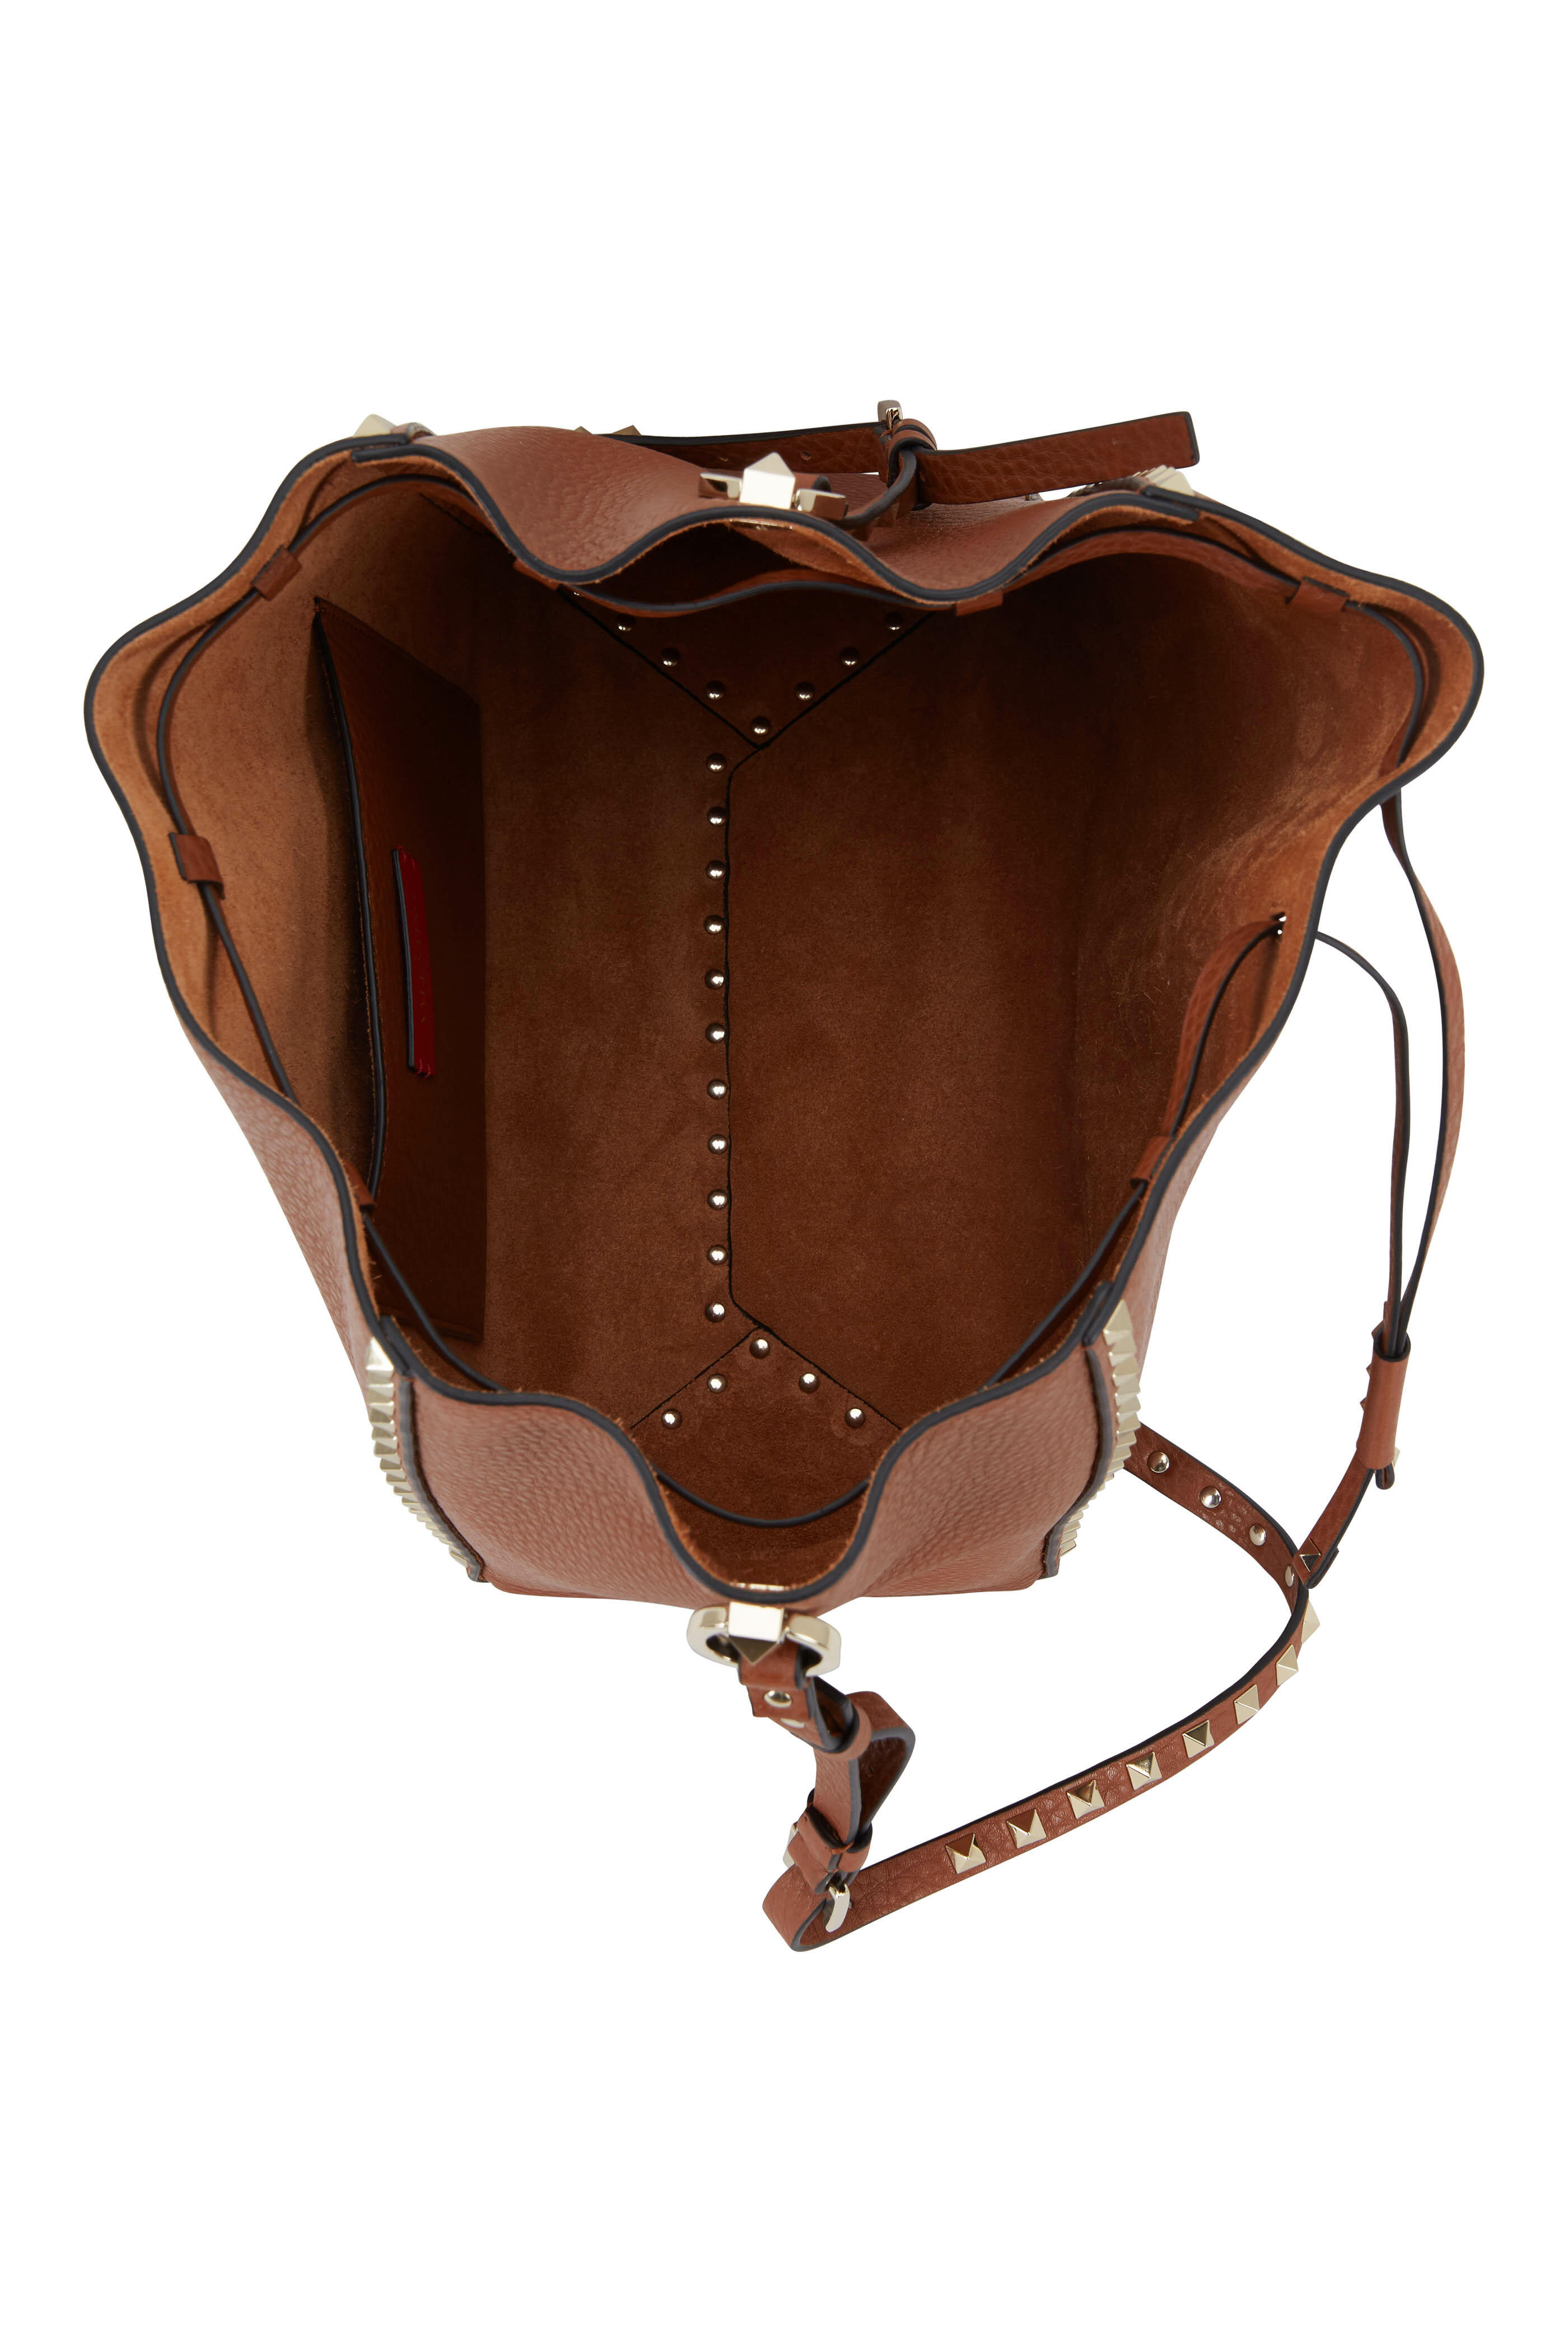 Valentino Garavani Medium Rockstud Leather Tote Bag In Selleria,black